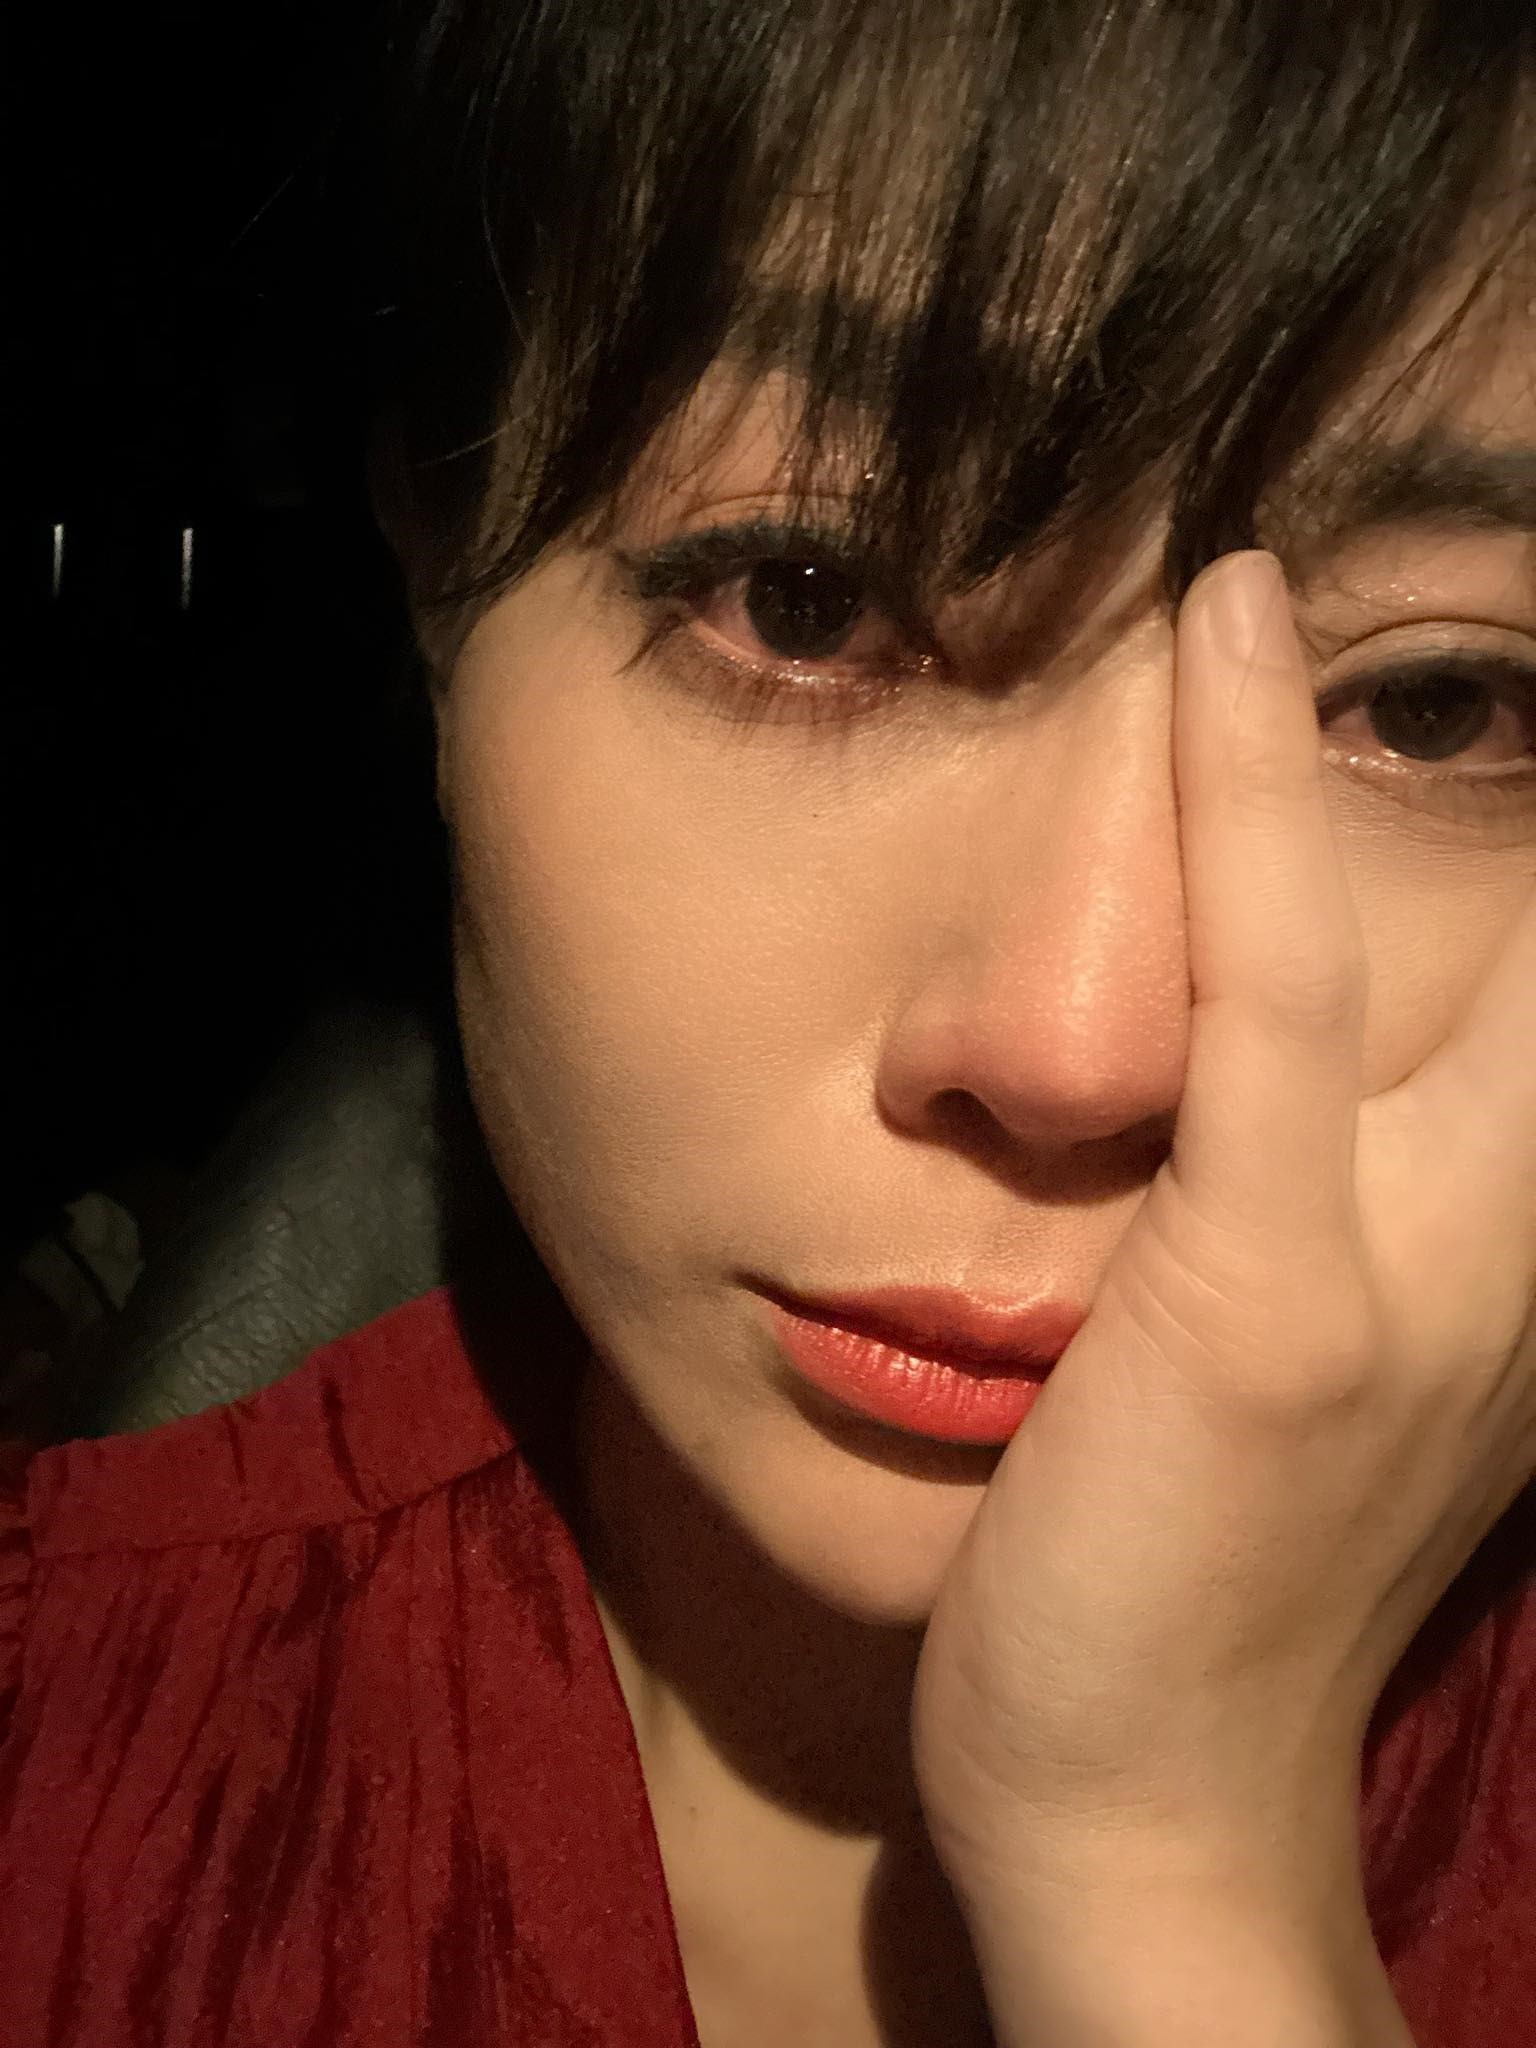 Thanh Hương khóc khi tranh thủ xem các tập “Cuộc đời vẫn đẹp sao“. Ảnh: Facebook nhân vật